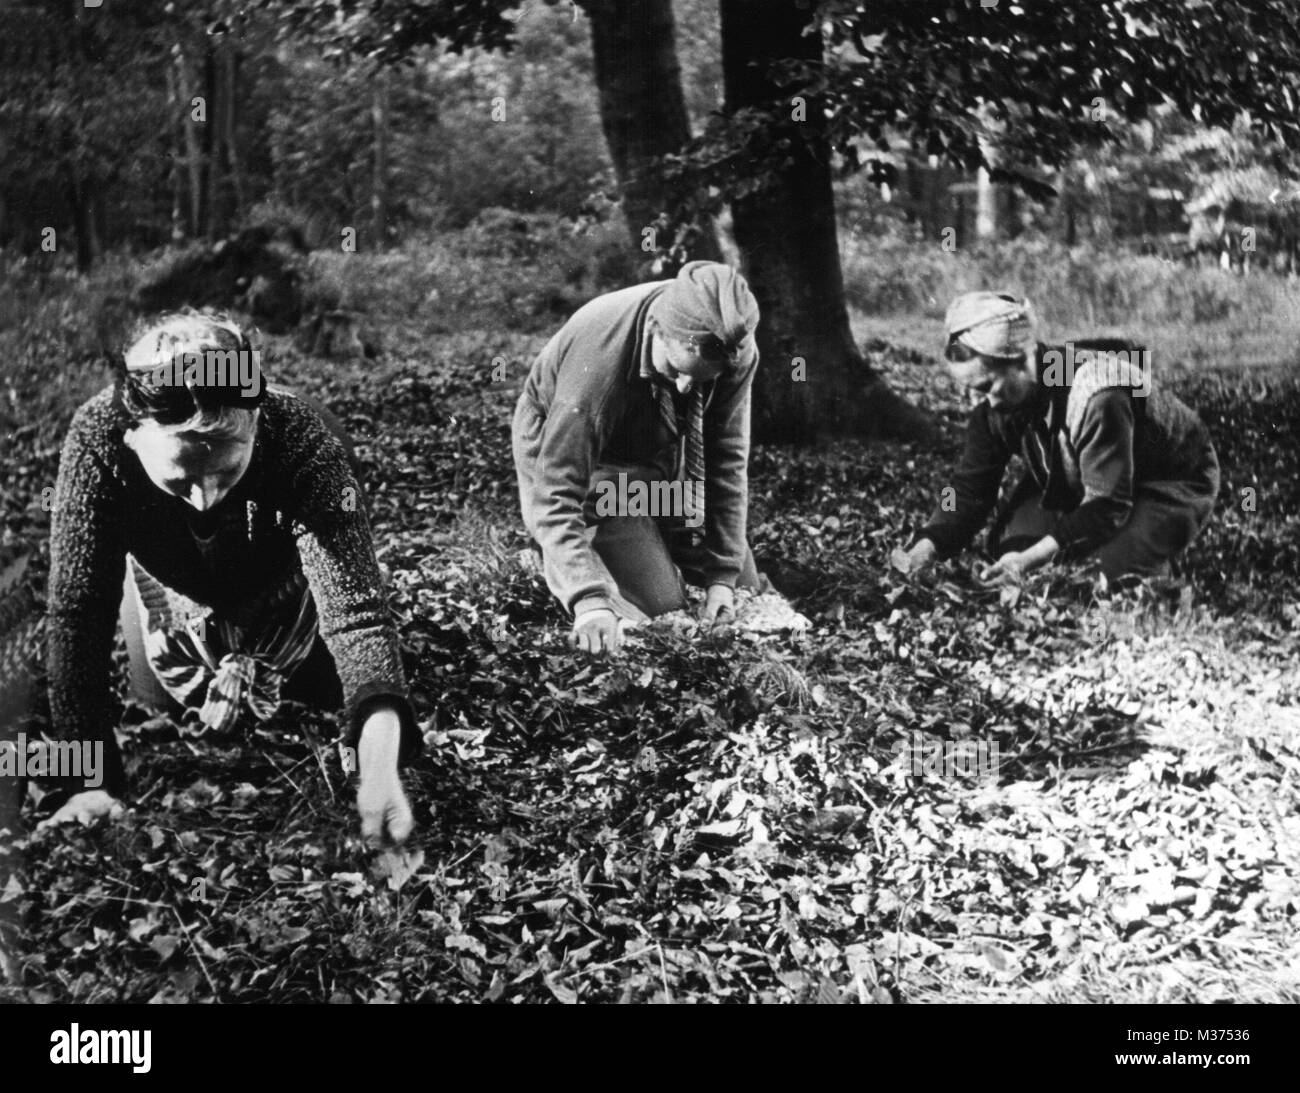 Alemania de posguerra fotografías e imágenes de alta resolución - Alamy